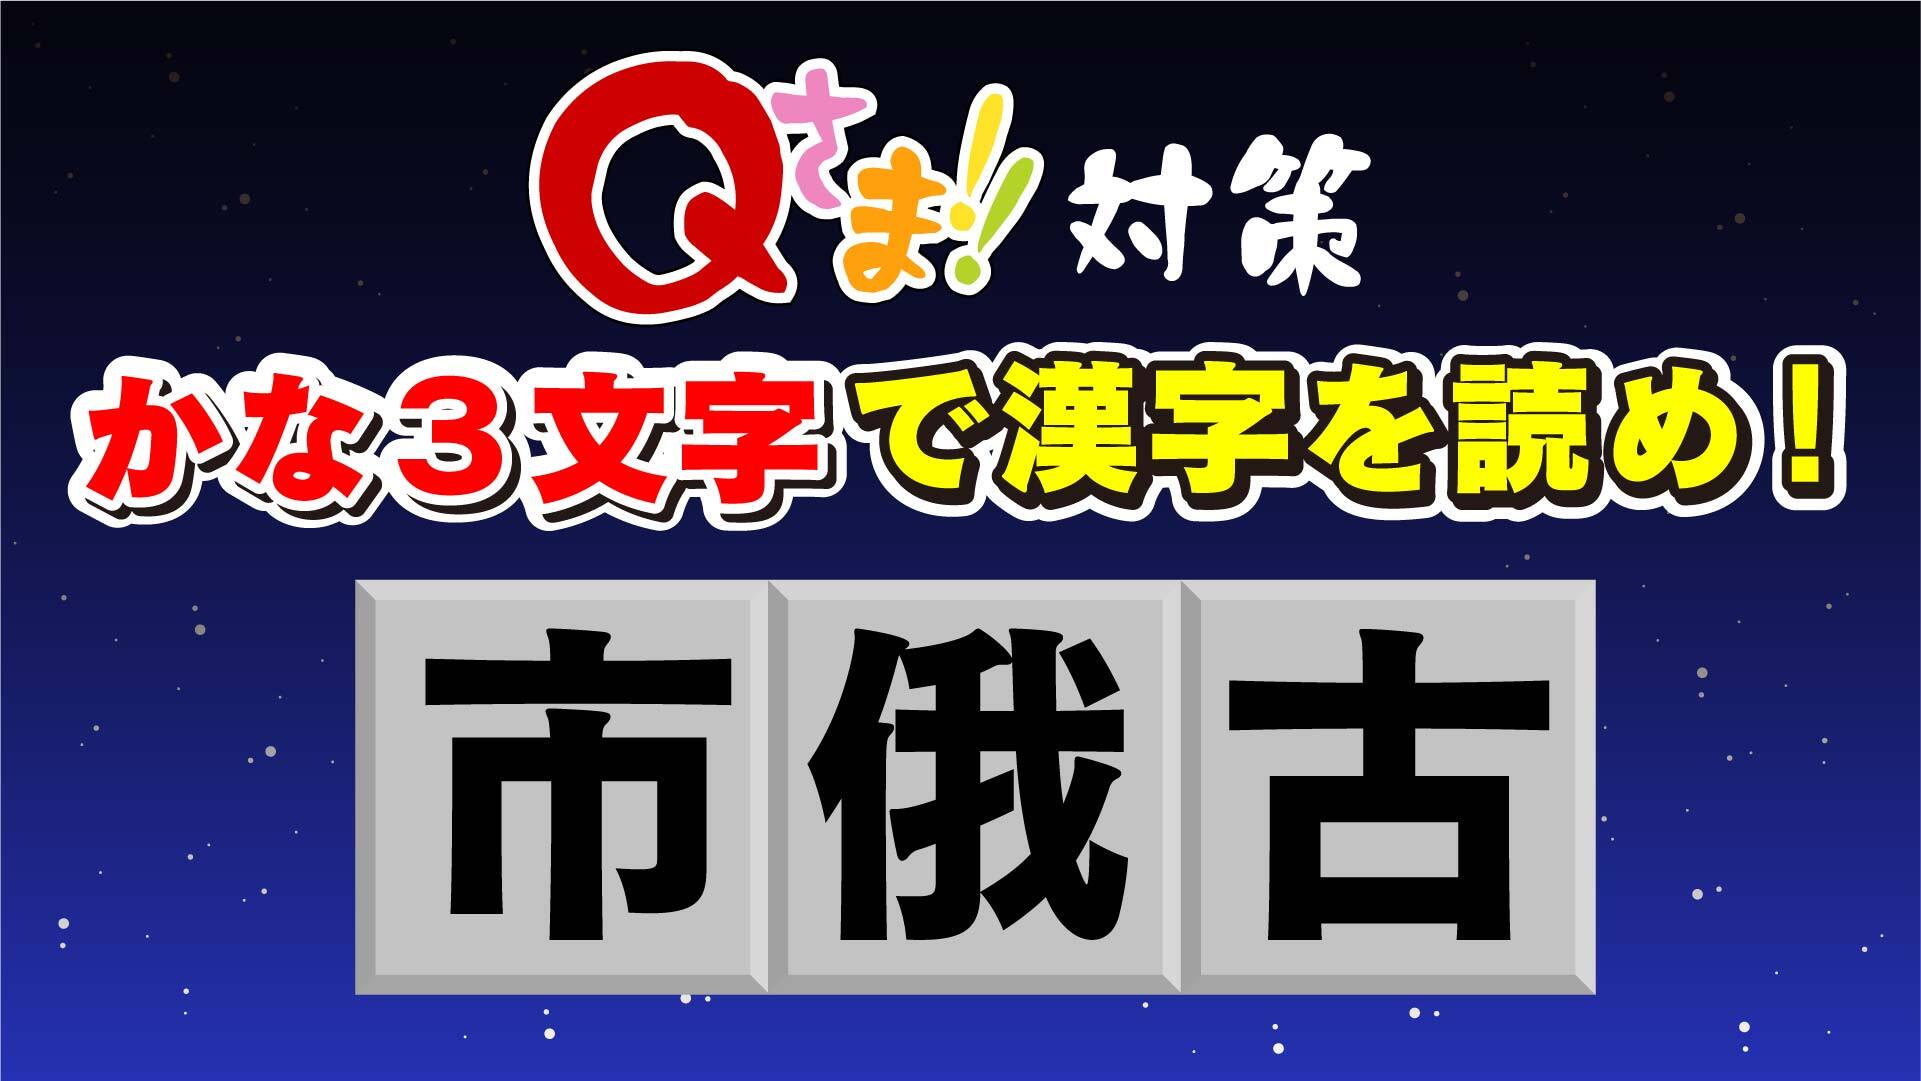 さま アプリ 漢字 消し q マス クイズ番組「Qさま!!」で人気の「漢字ケシマス」がアプリで登場！